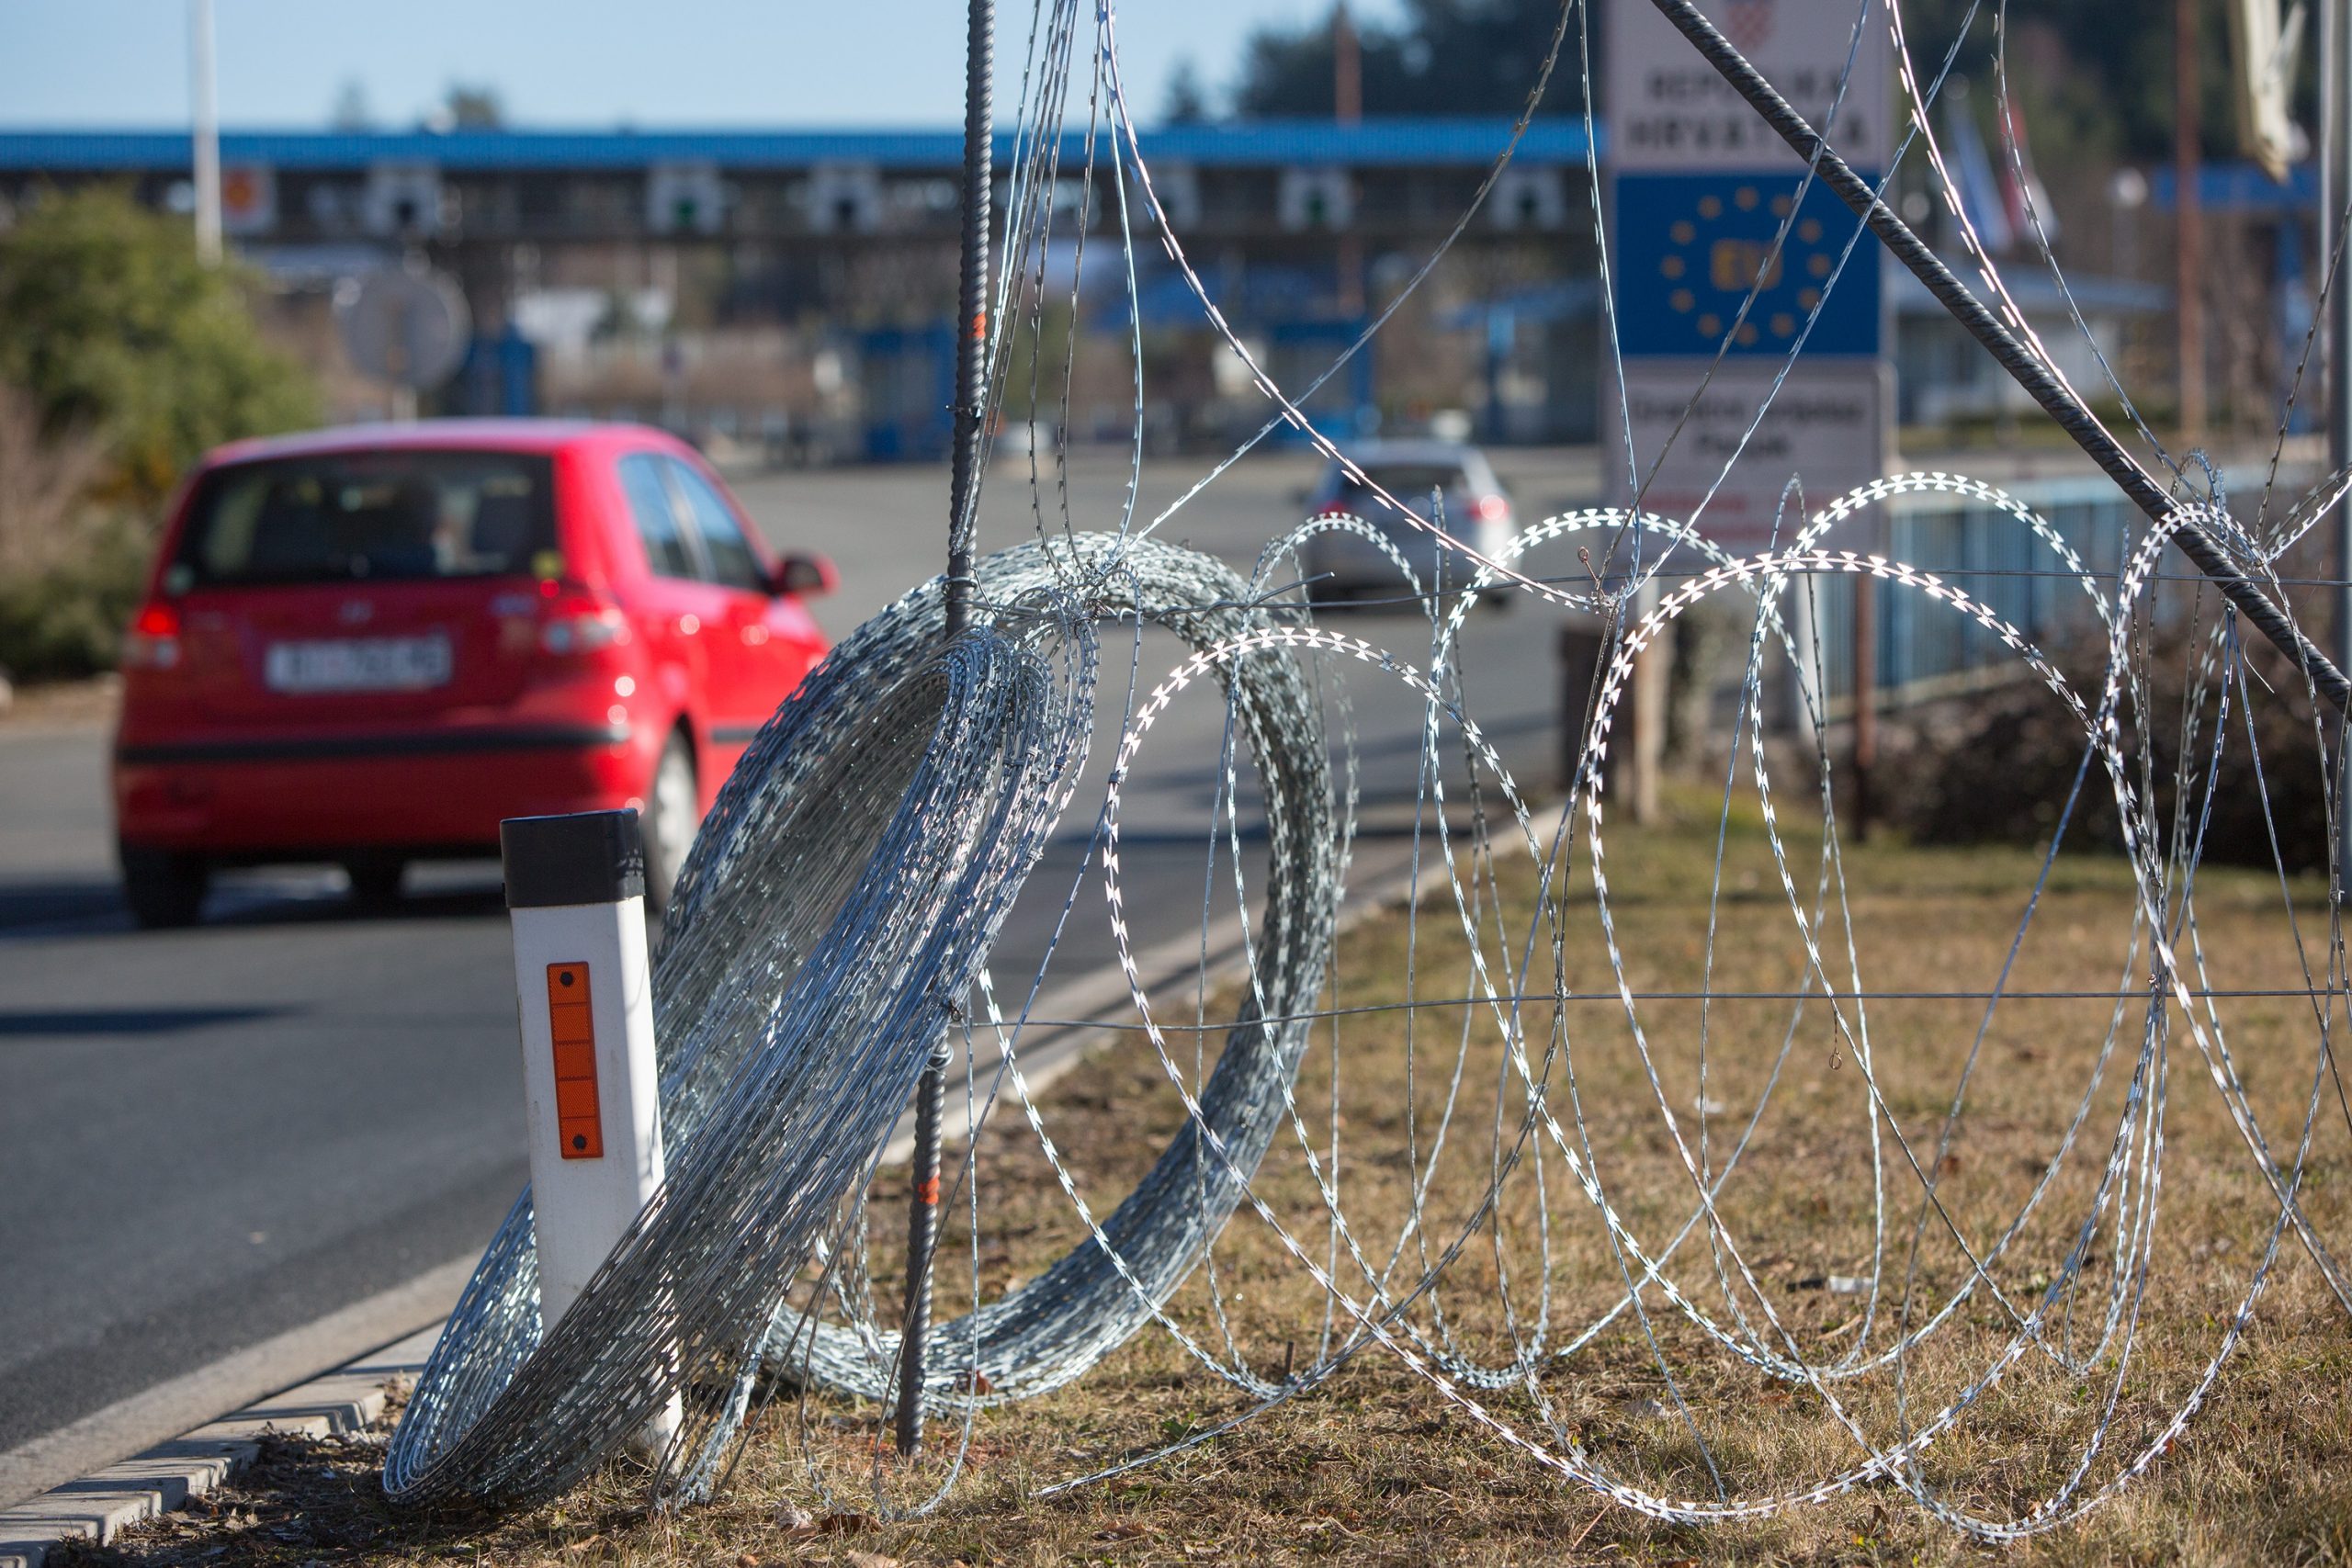 11.12.2015., Rupa - Slovenska vojska postavlja bodljikavu zicu na granicnim prijelazima Rupa i Pasjak.
Photo: Nel Pavletic/PIXSELL